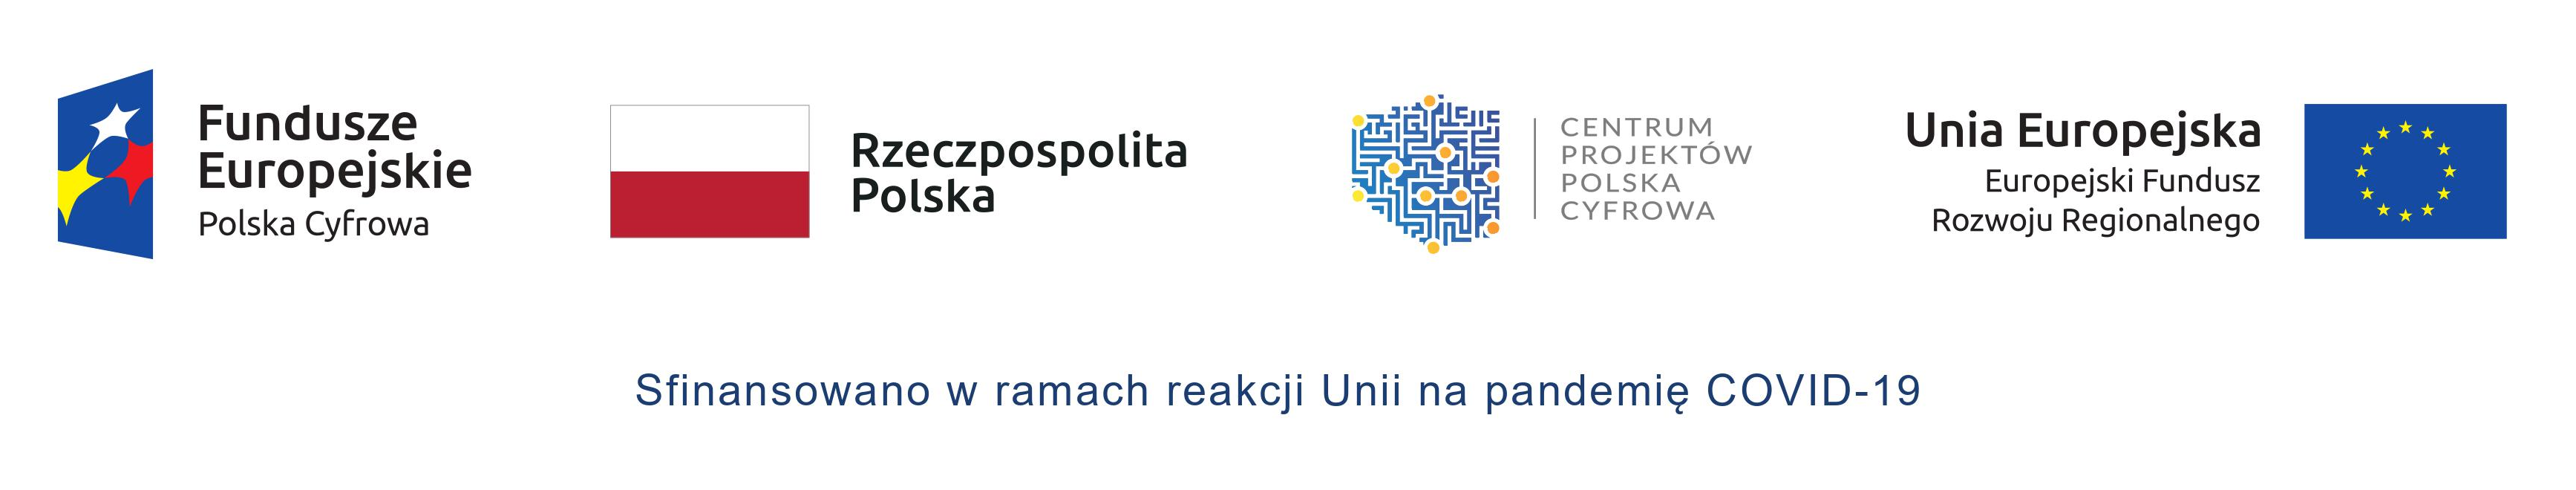 od lewej logo Fundusze Europejskie Polska Cyfrowa, flaga Reczpospolitej Polskiej, logo Centrum Projektów Polska Cyfrowa, flaga Unii Europejskiej, Europejski Fundusz Rozwoju Regionalnego